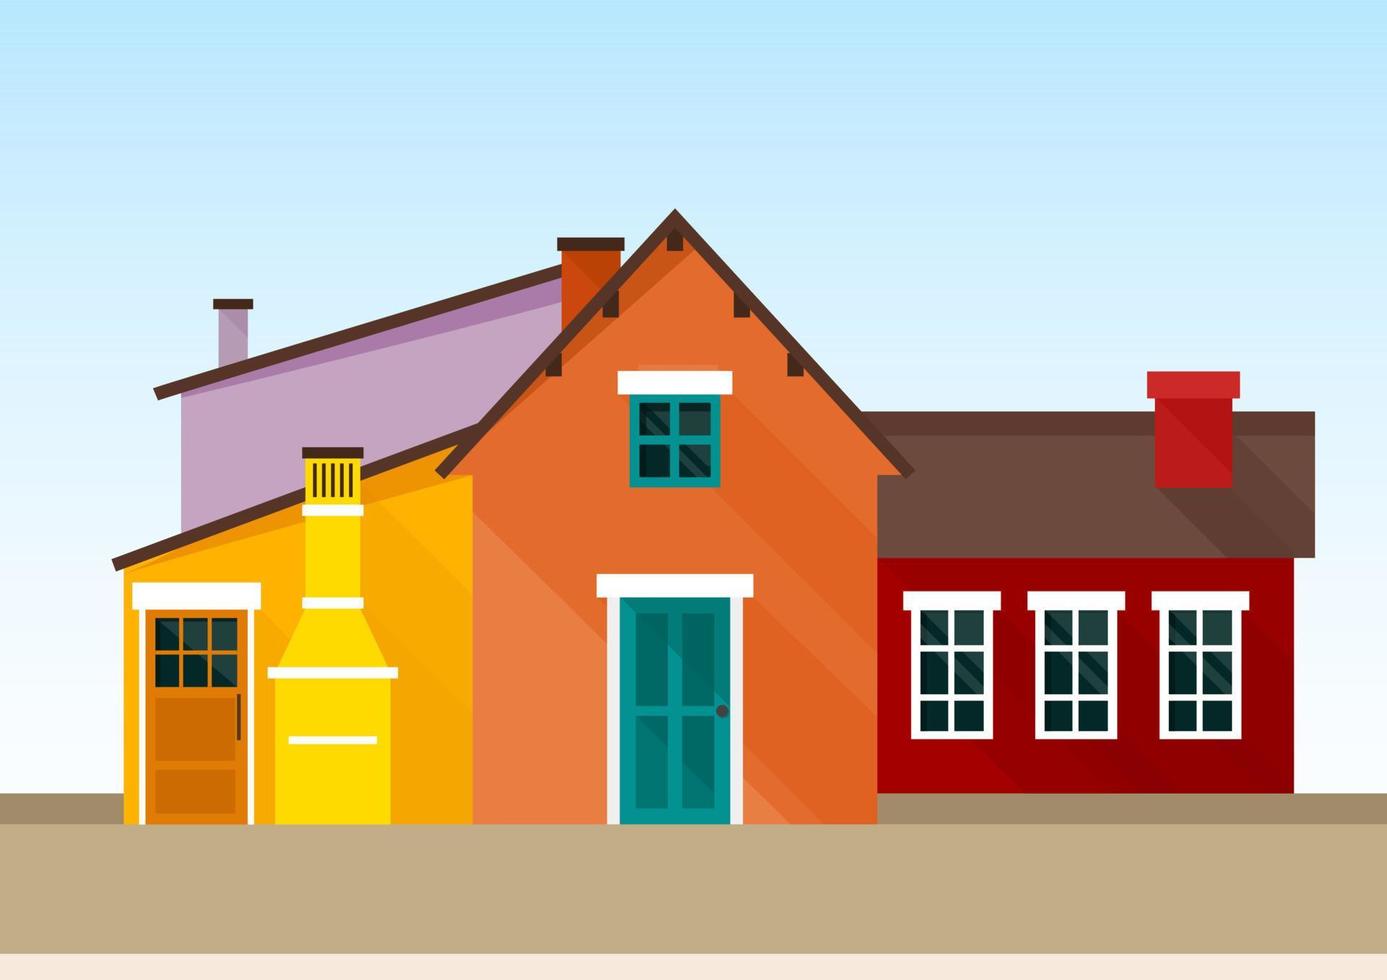 varias casas de estilo escandinavo de color amarillo brillante, rojo y morado vector